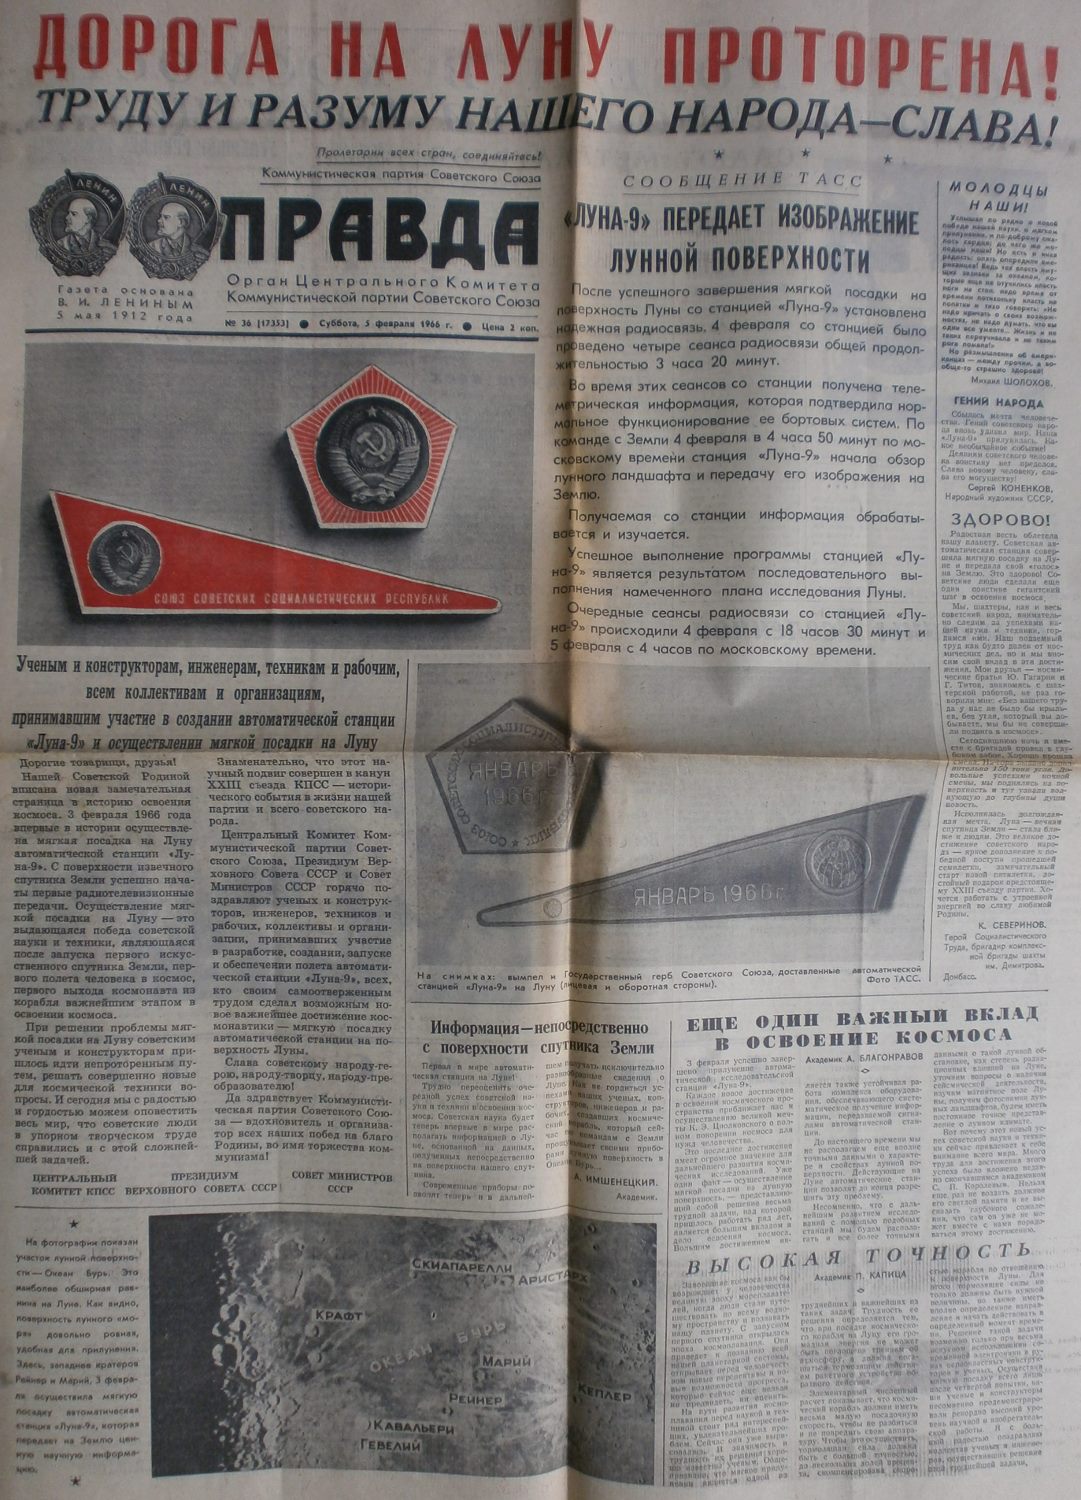 "Prawda", 5. Februar 1966